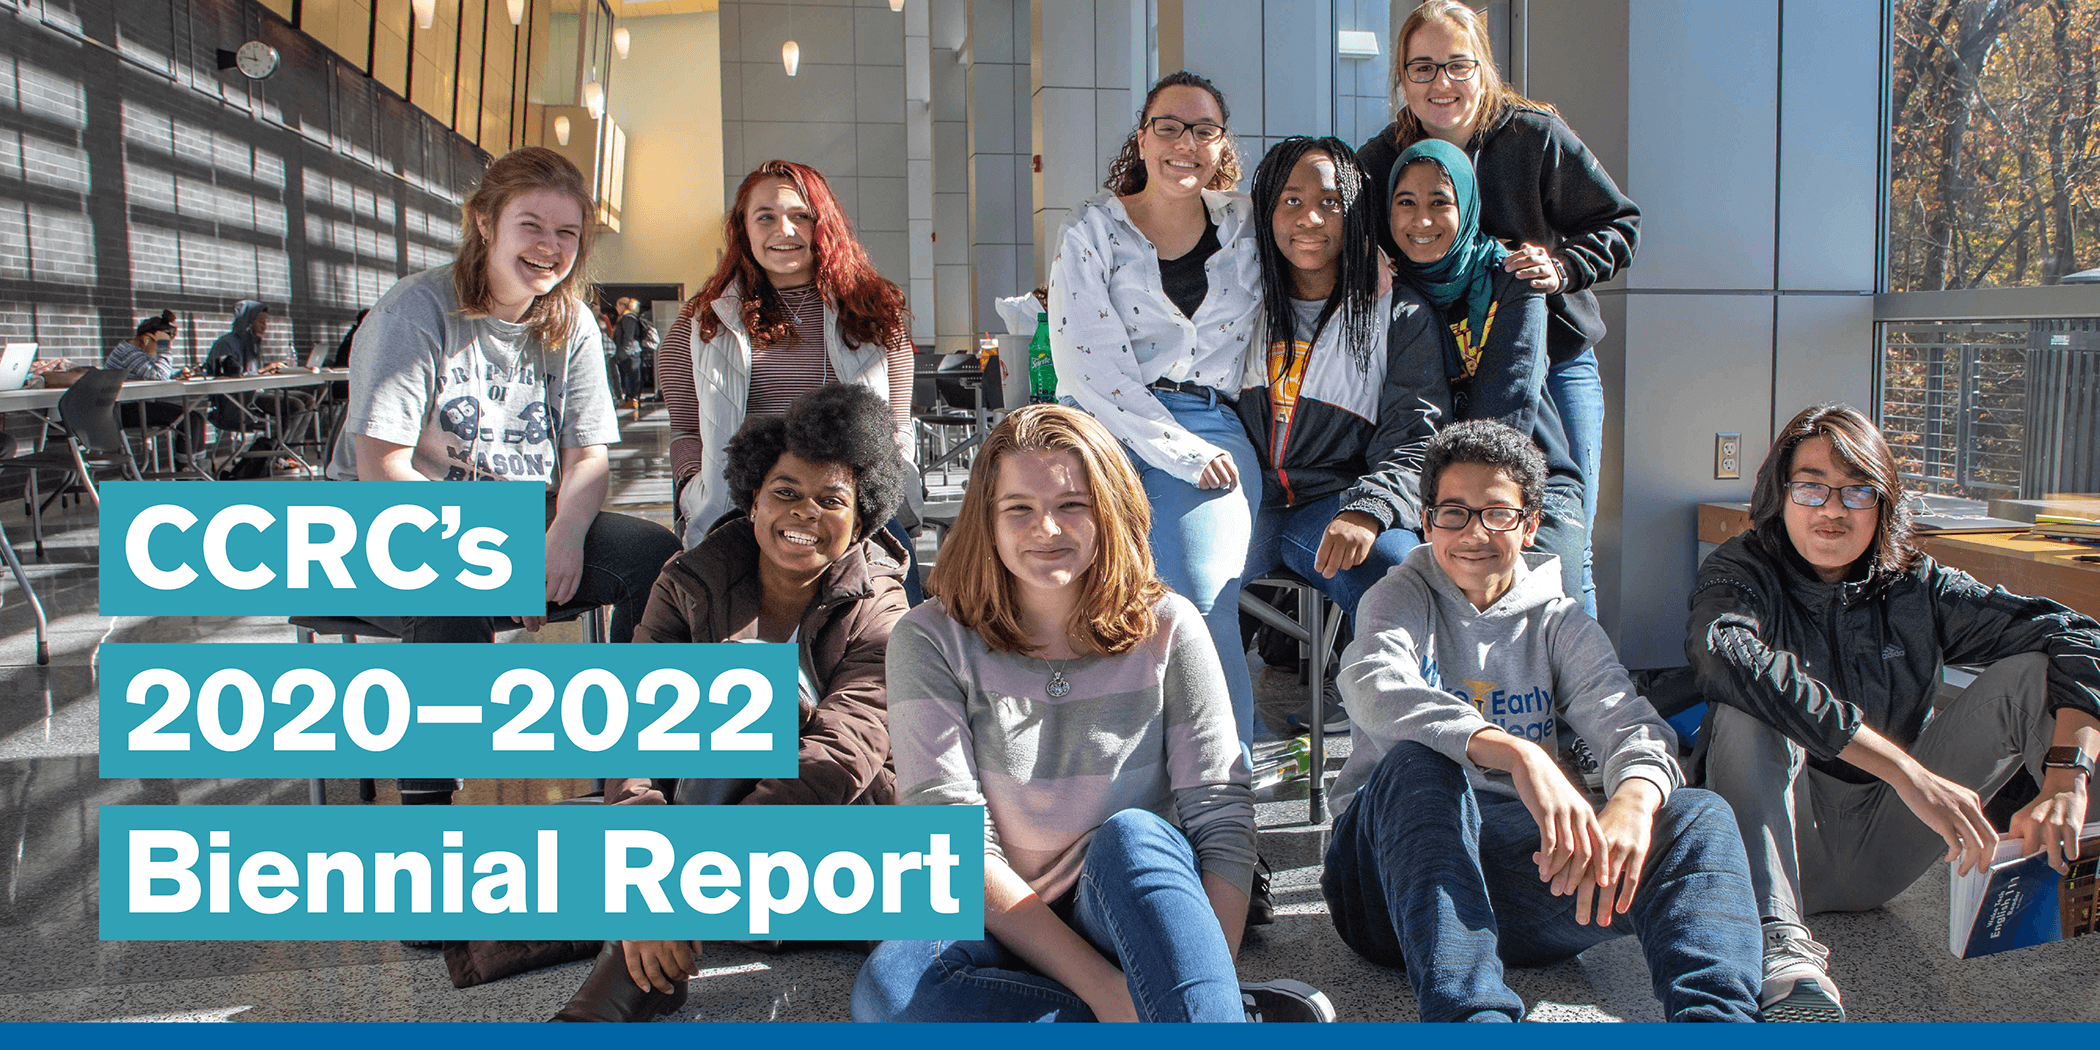 CCRC's 2020-2022 Biennial Report